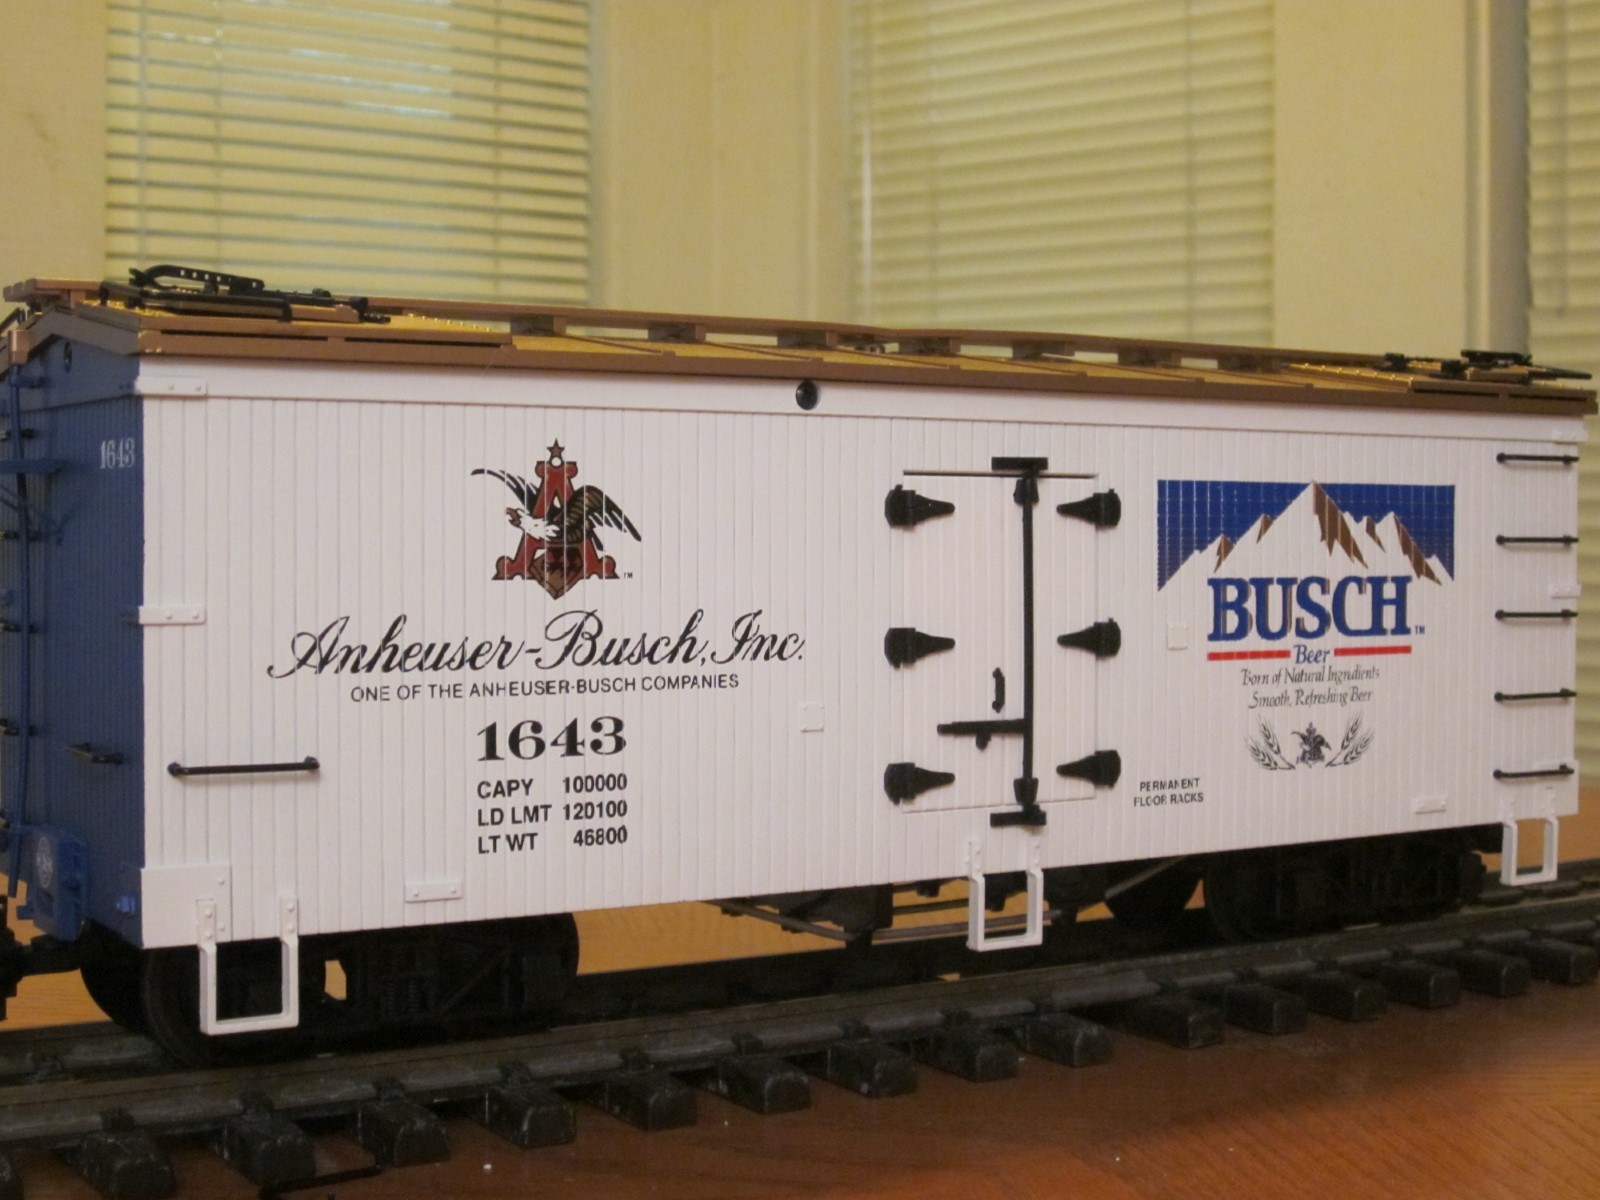 R1643 Busch Beer AB 1643